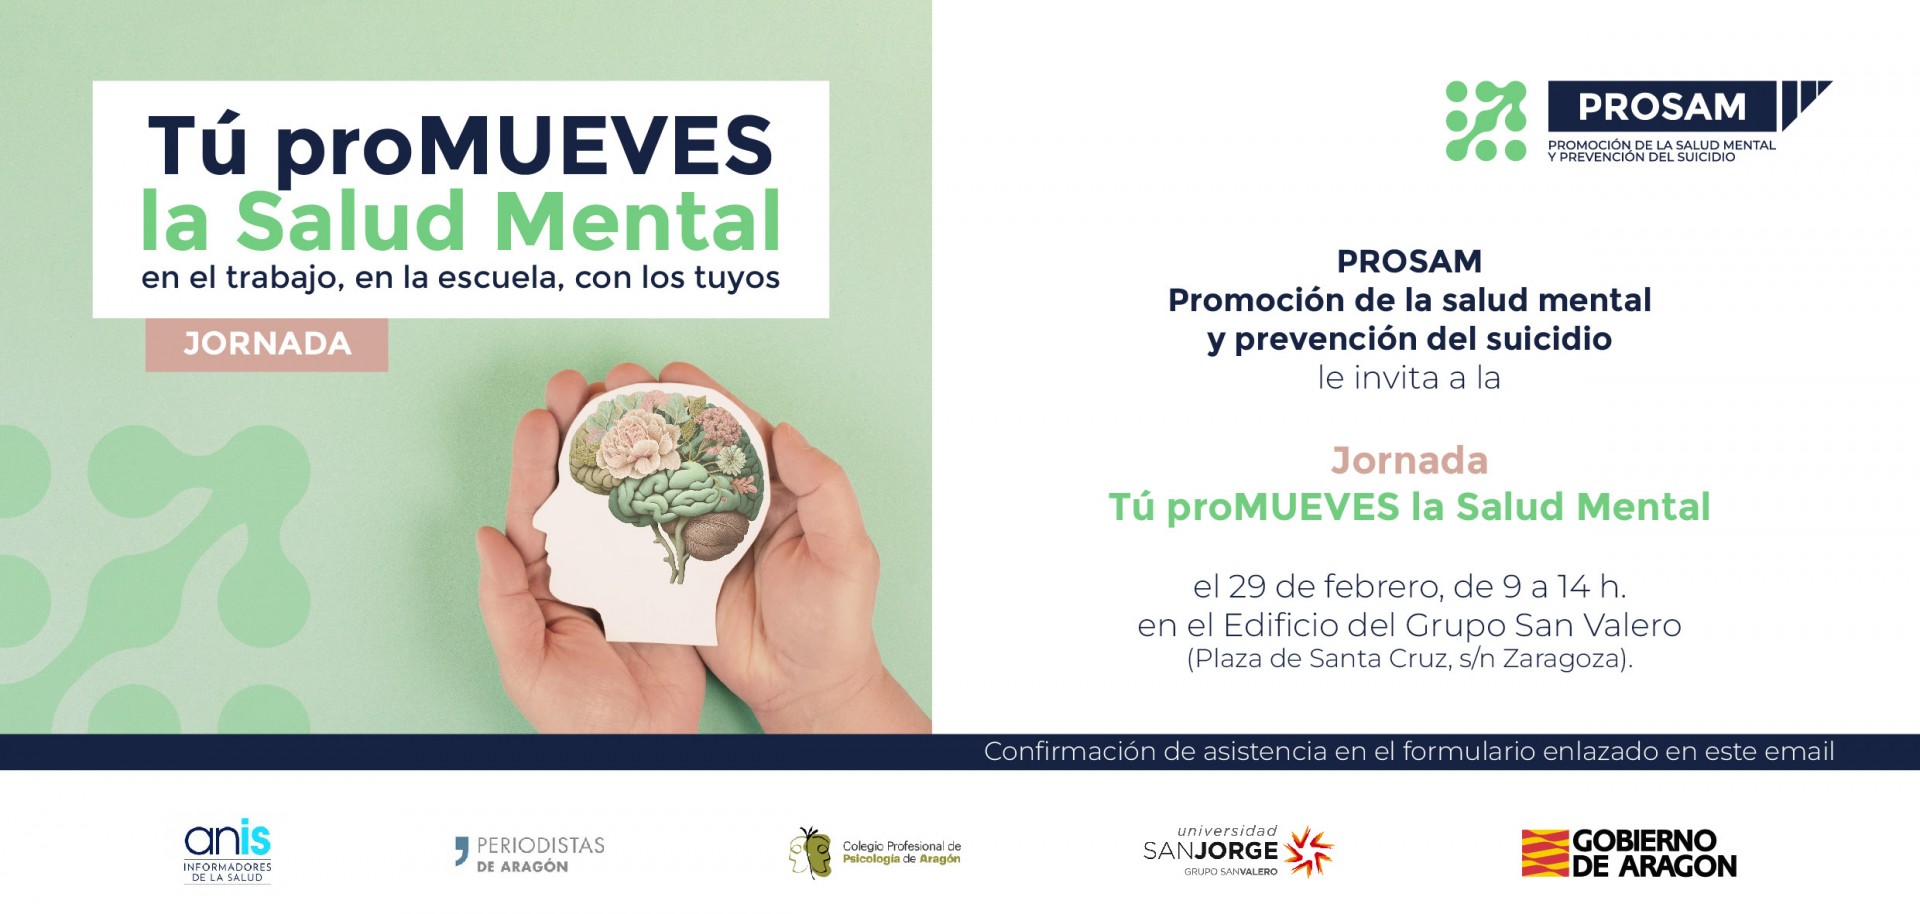 Tú promueves la Salud Mental, una jornada para hablar de prevención desde el trabajo, la escuela y el entorno